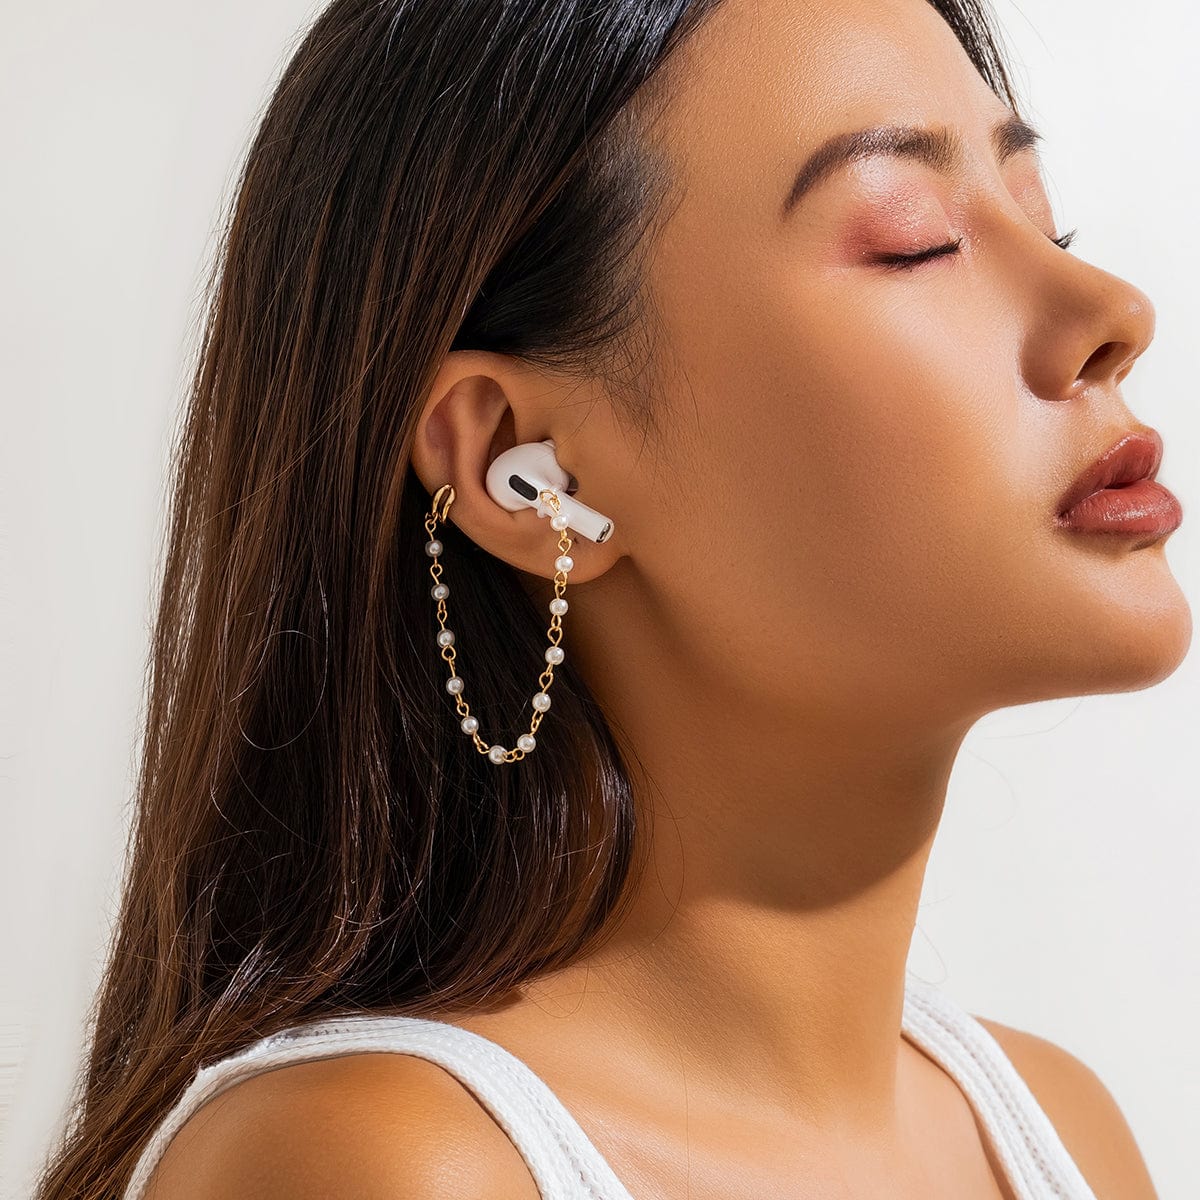 Anti-lost Wireless AirPods Earphone Pearl Chain Ear Cuff Earring - ArtGalleryZen